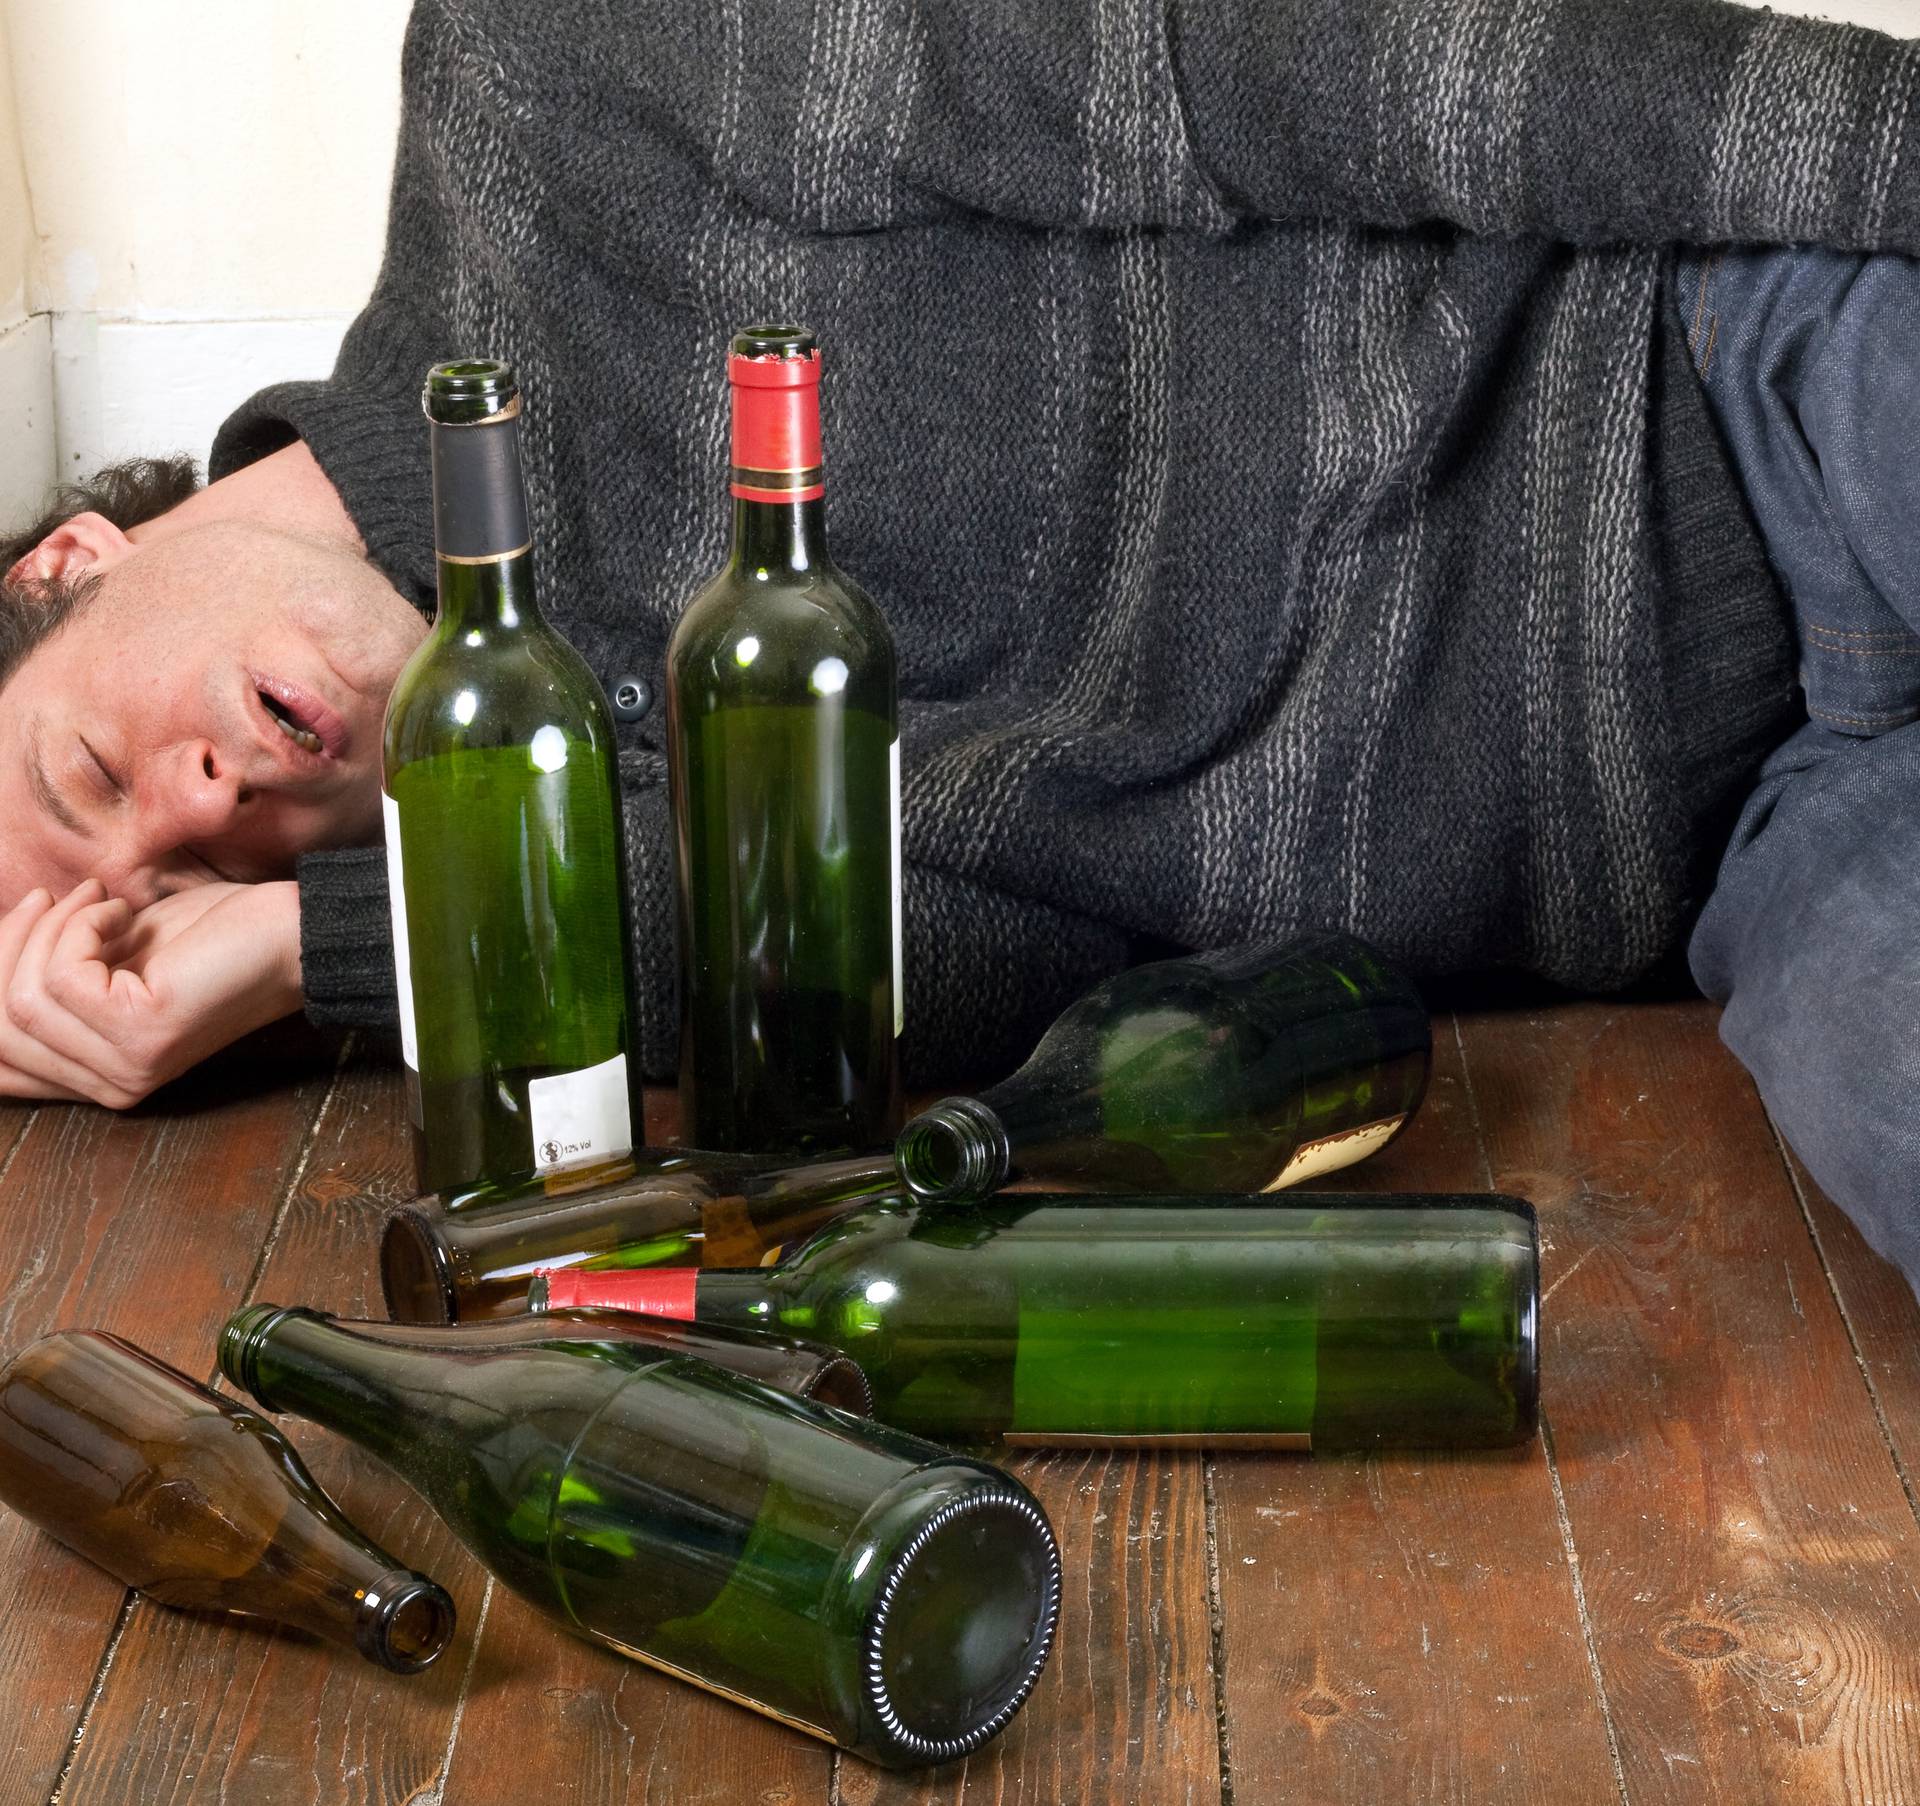 10 ranih znakova alkoholizma - alarmi koje ne smijete ignorirati